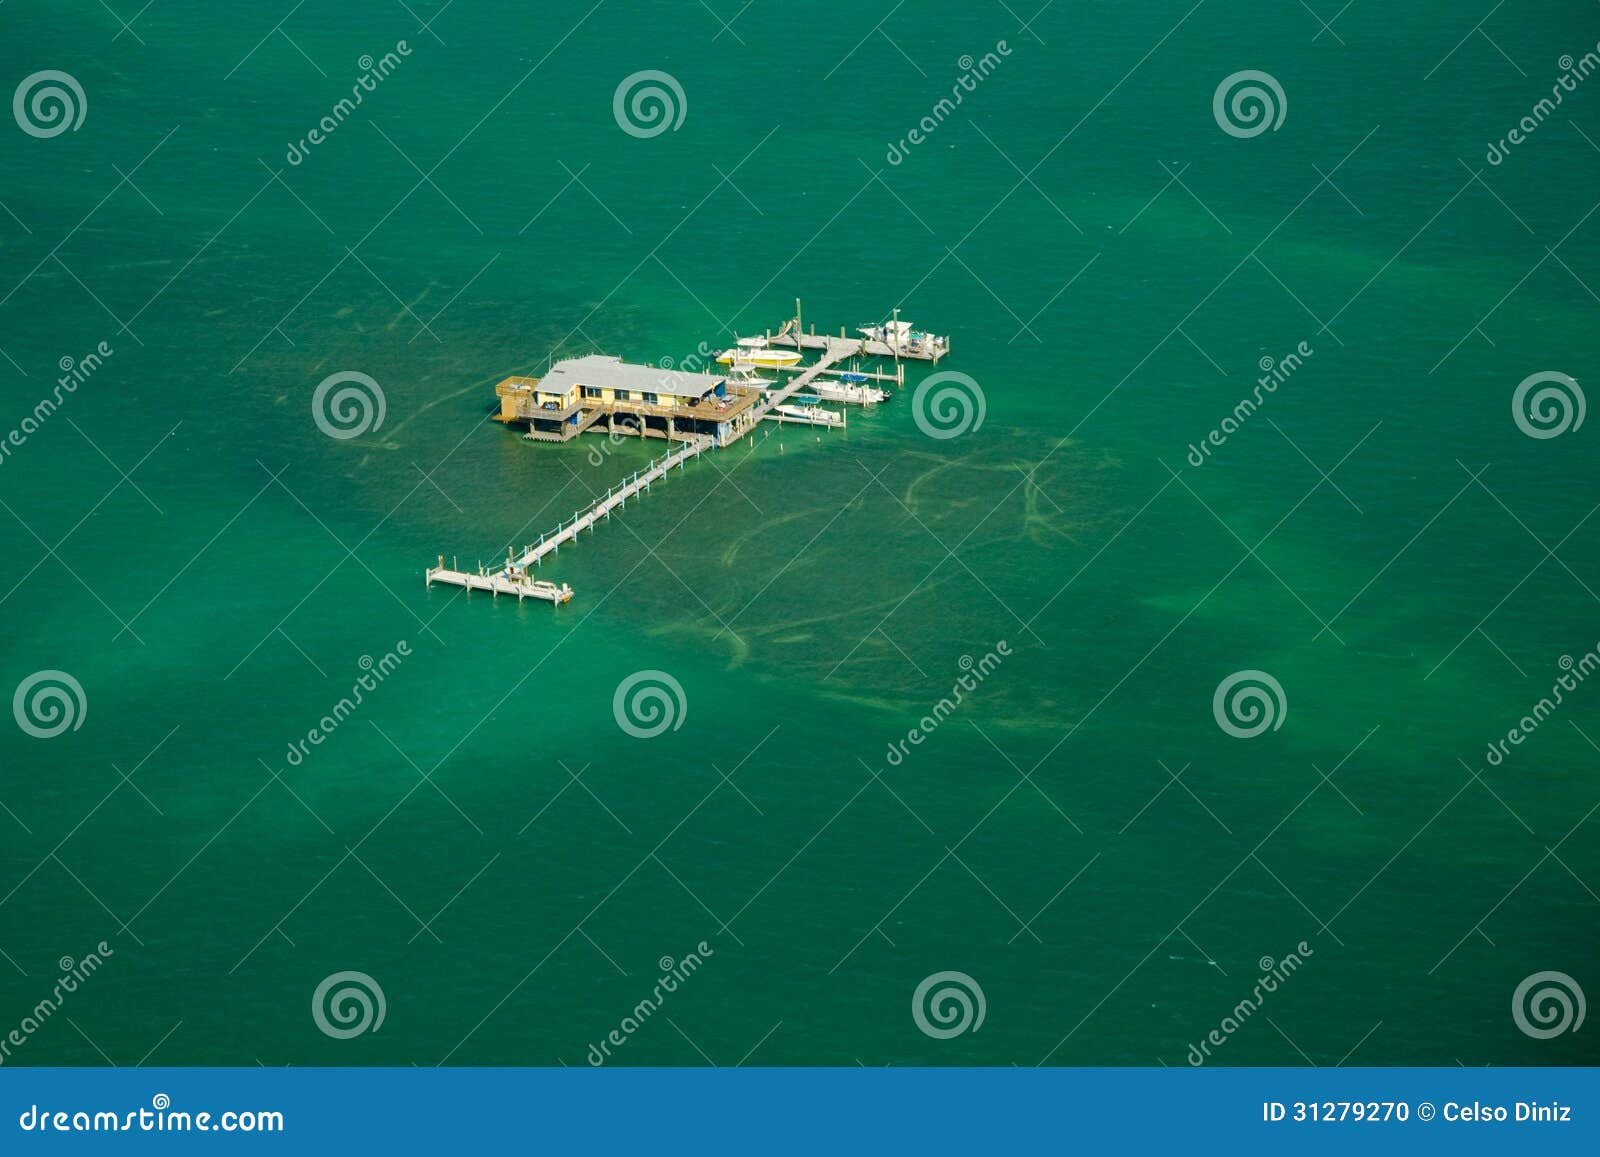 stilt house and pier in the ocean